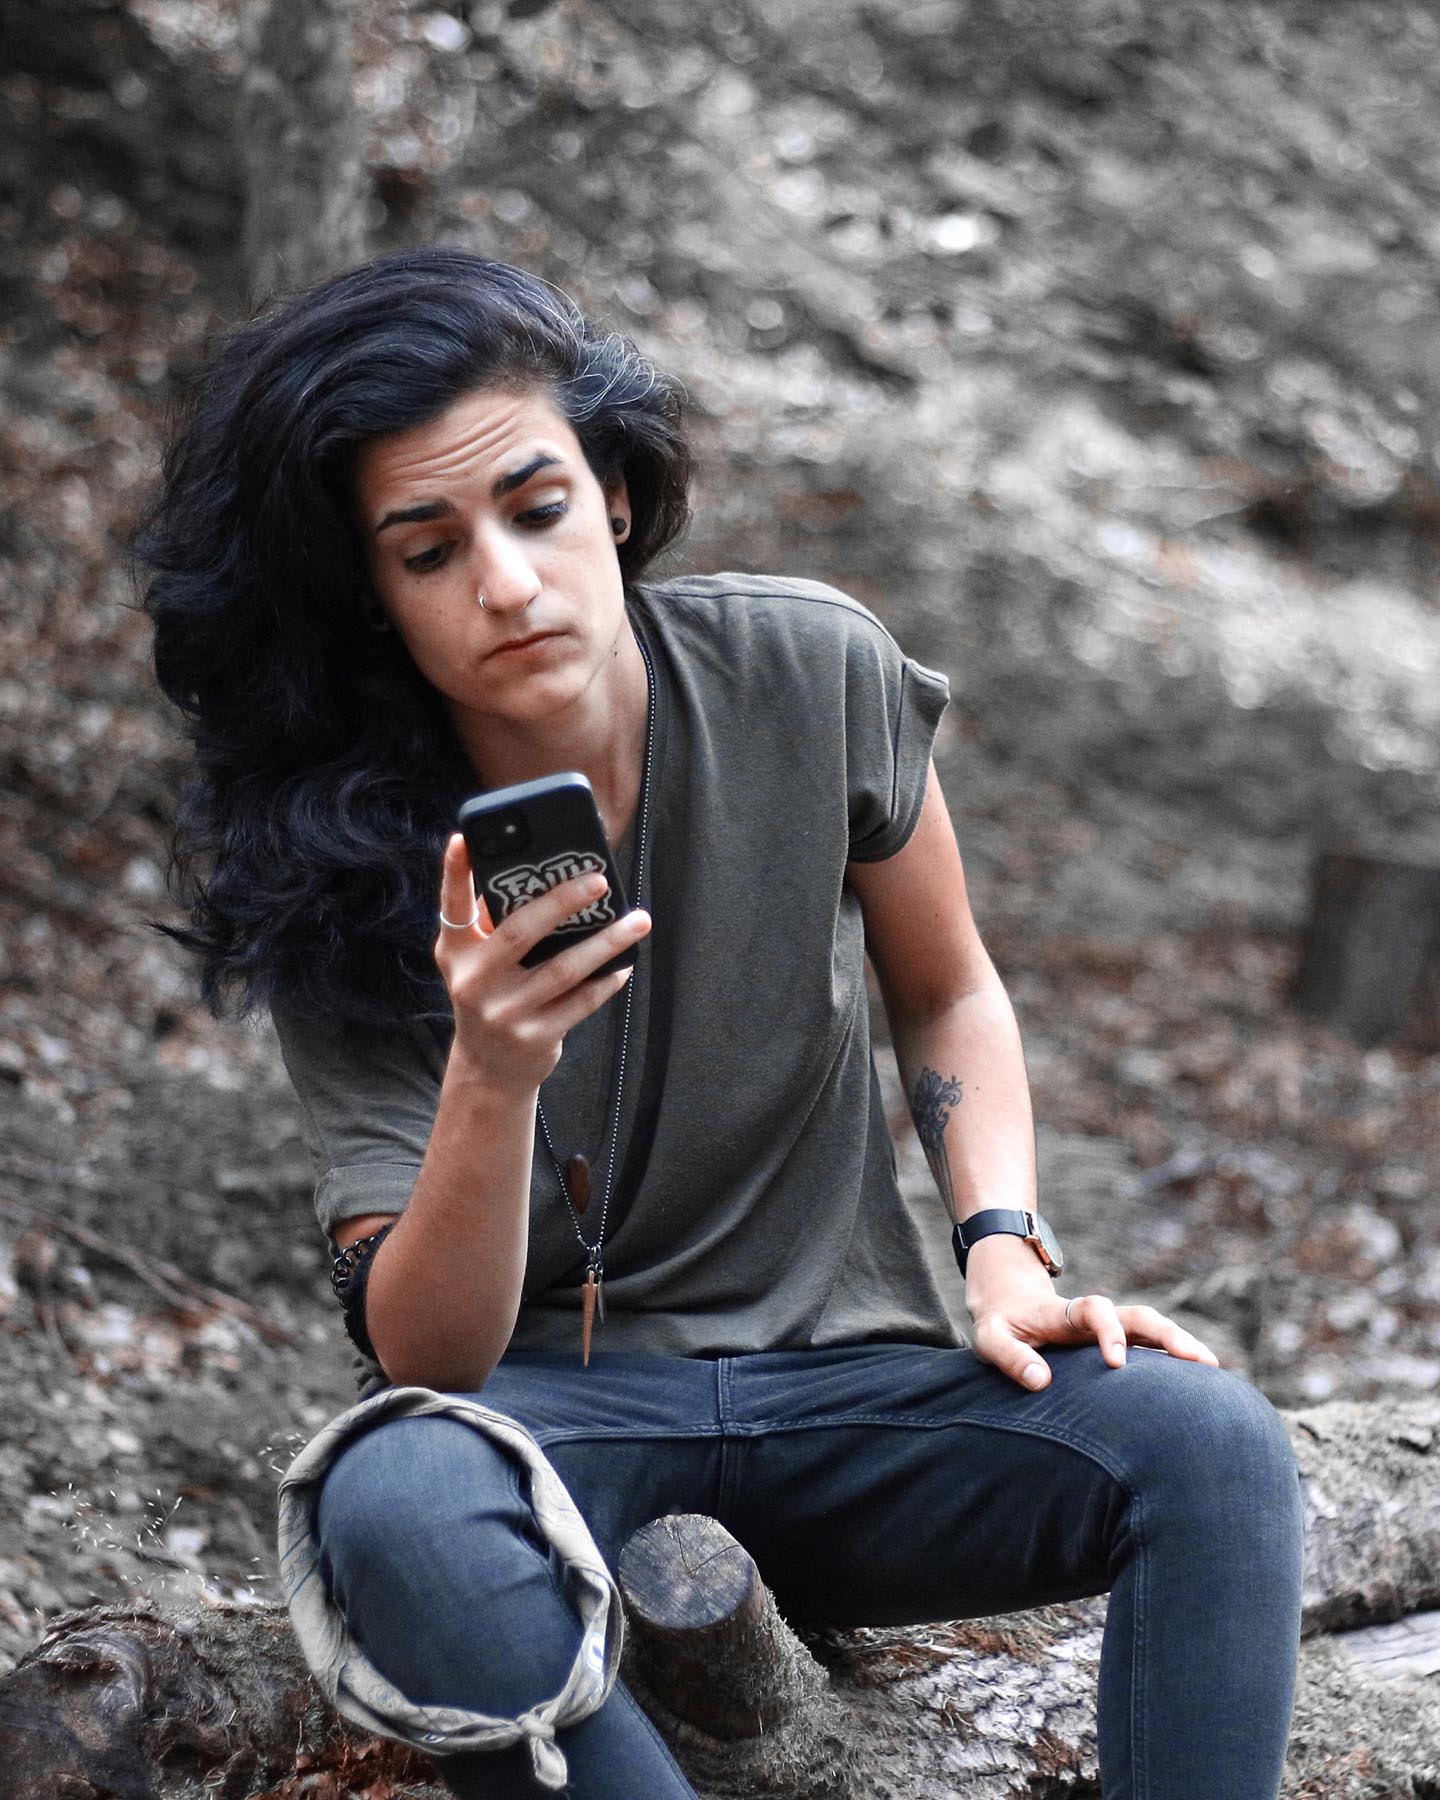 Deniz sitzt im Wald und schaut auf ihr Smartphone um Liebeskummer zu überwinden